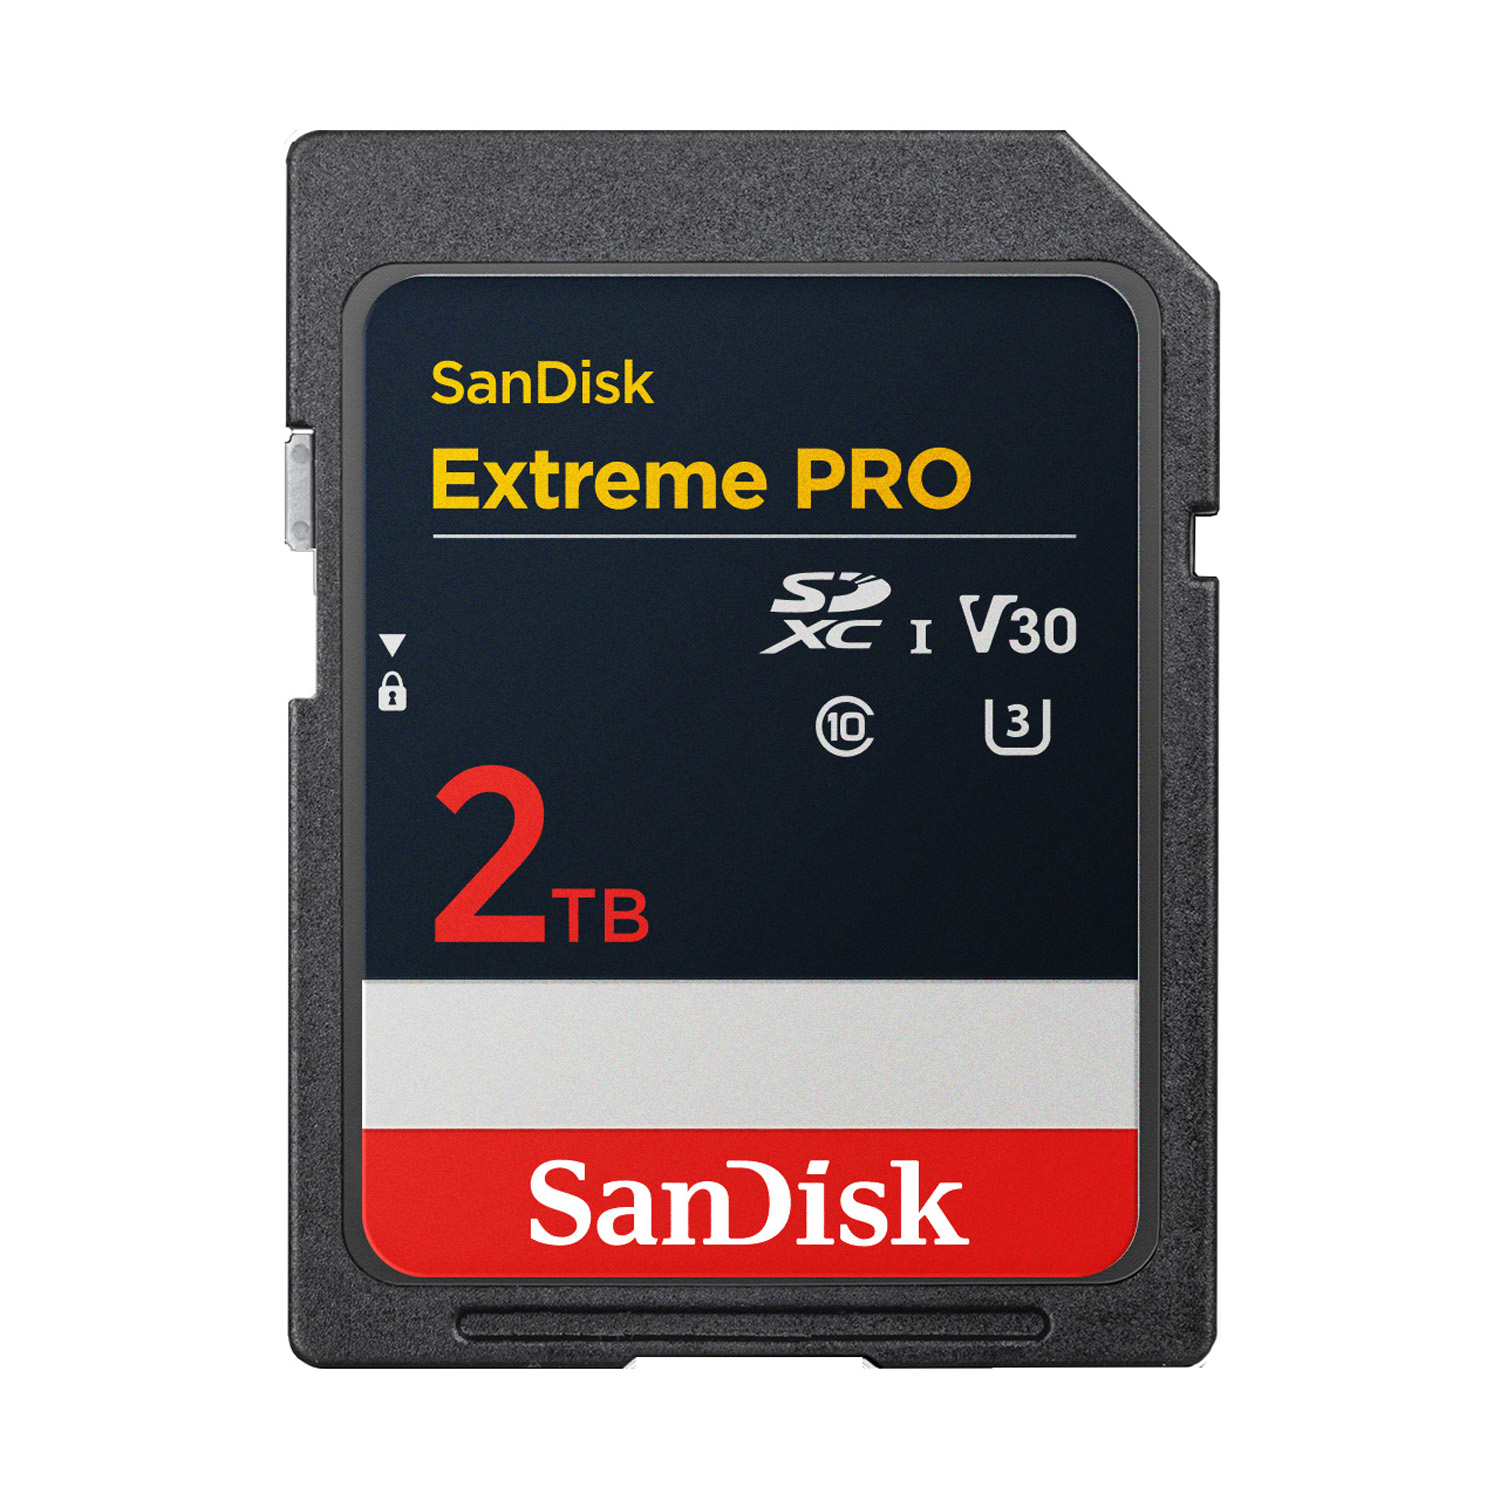 2TB SanDisk Extreme Pro SDXC UHS-I | Image © Western Digital